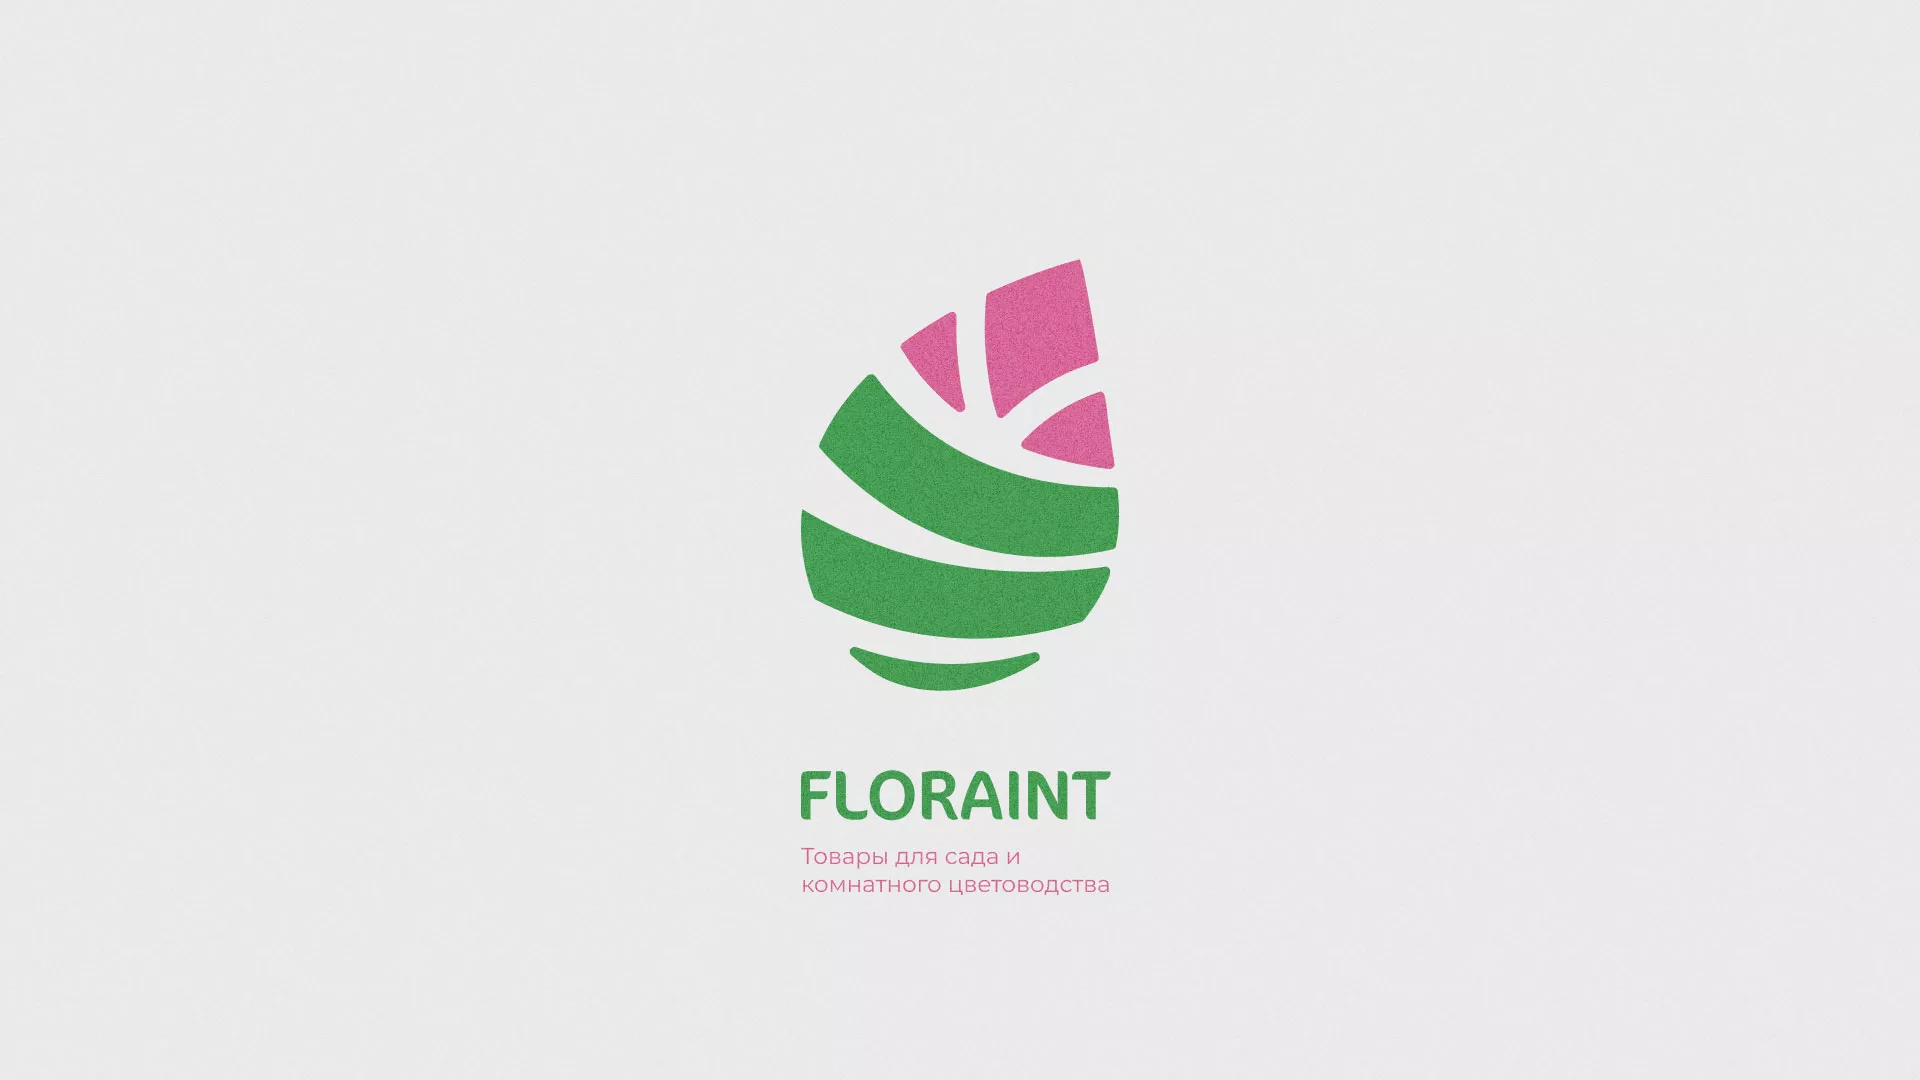 Разработка оформления профиля Instagram для магазина «Floraint» в Каменске-Уральском